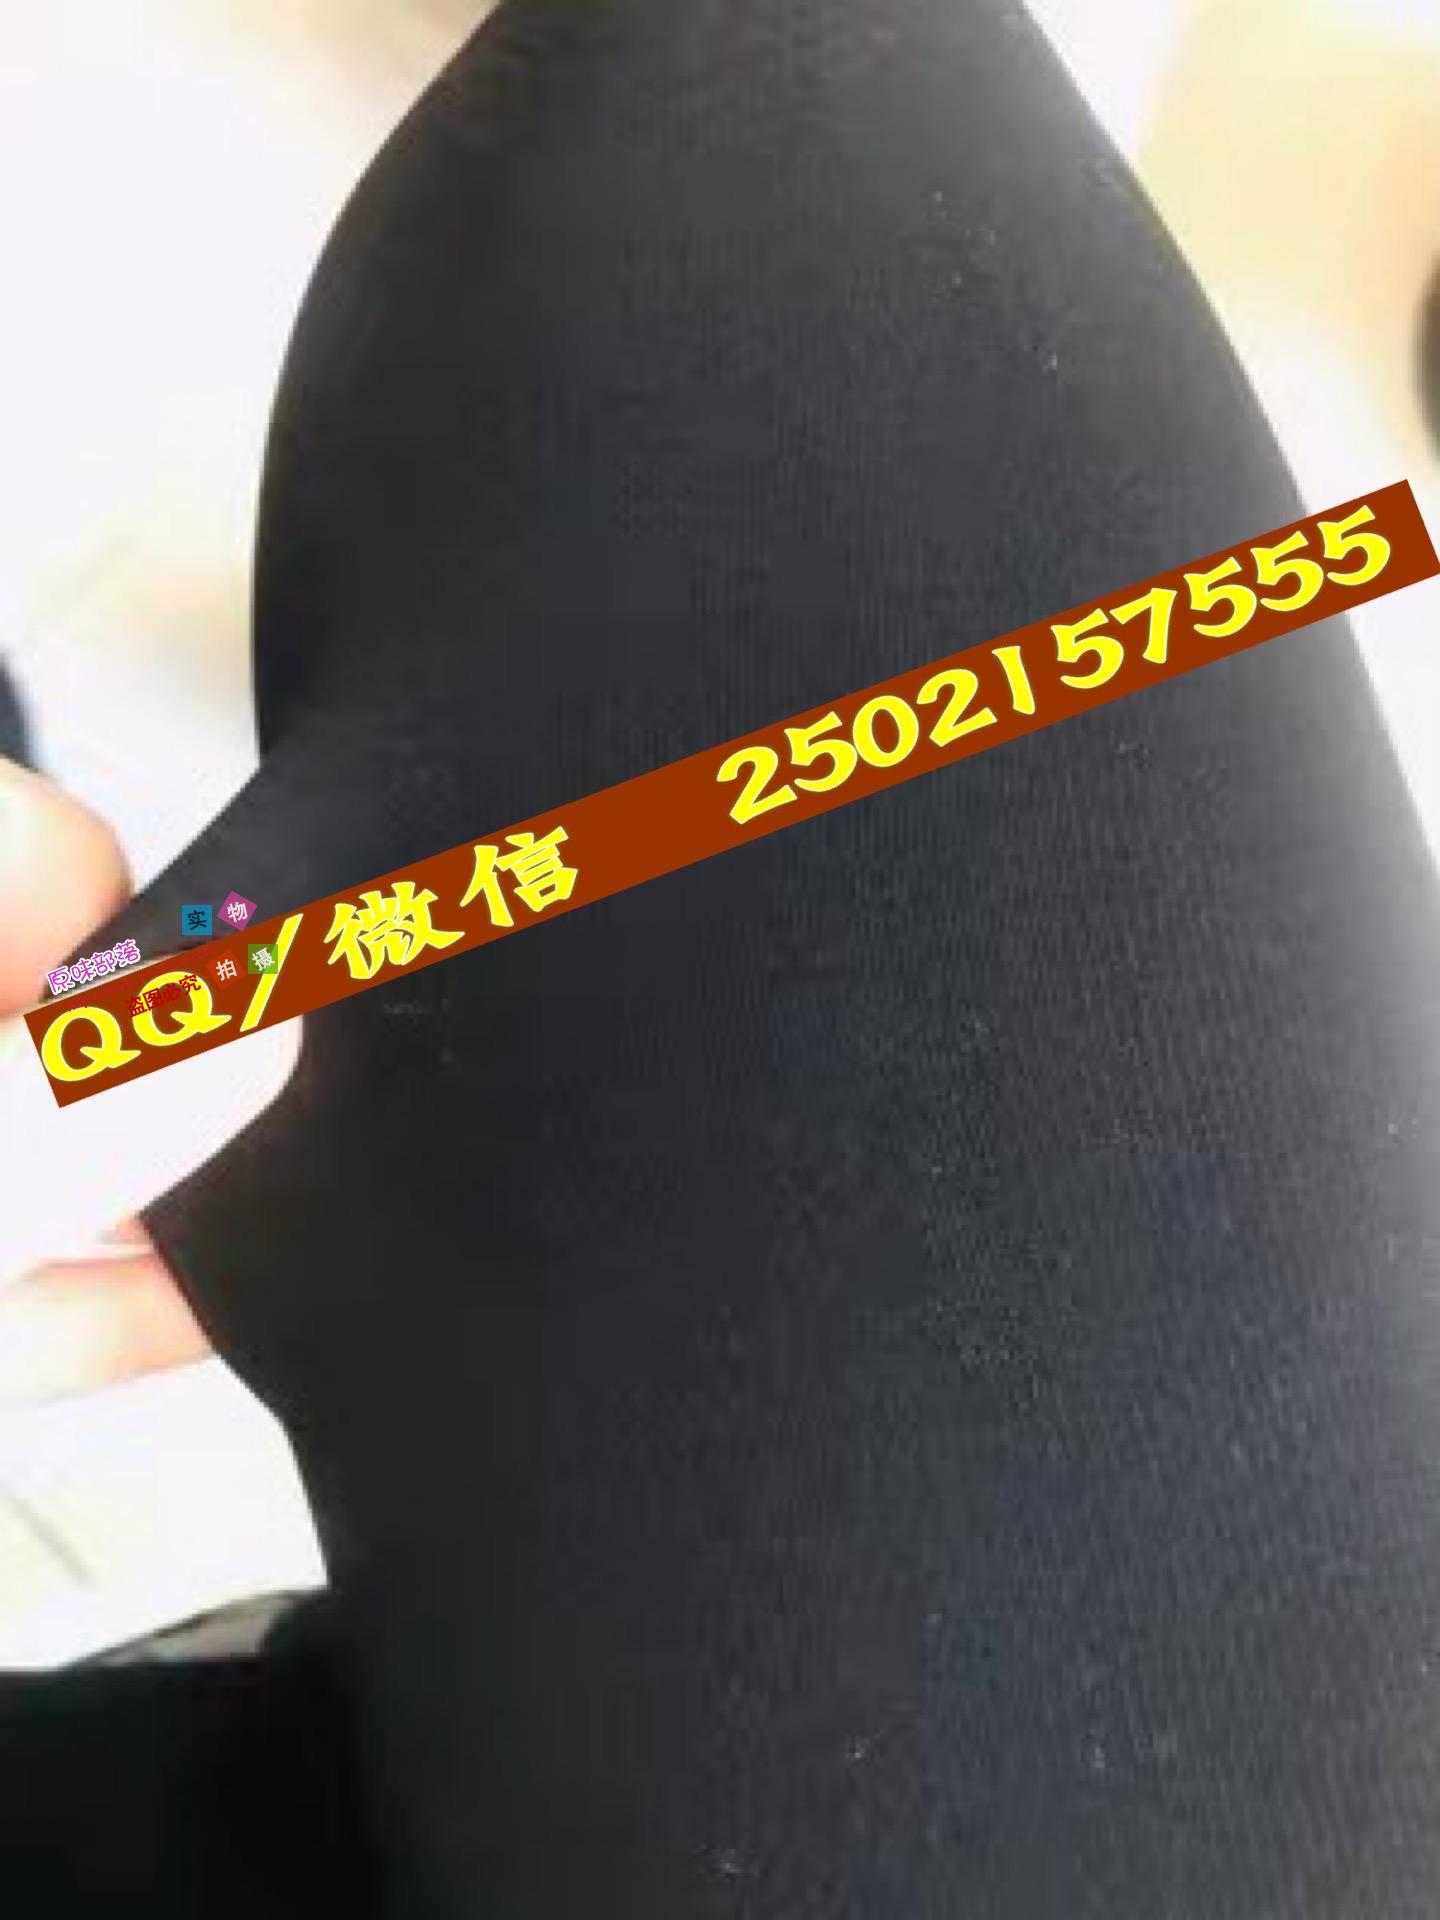 [森萝财团] BETA-007 楼梯间的黑丝小妹 萝莉丝袜写真套图 - 源码铺 - UMAPU.CN